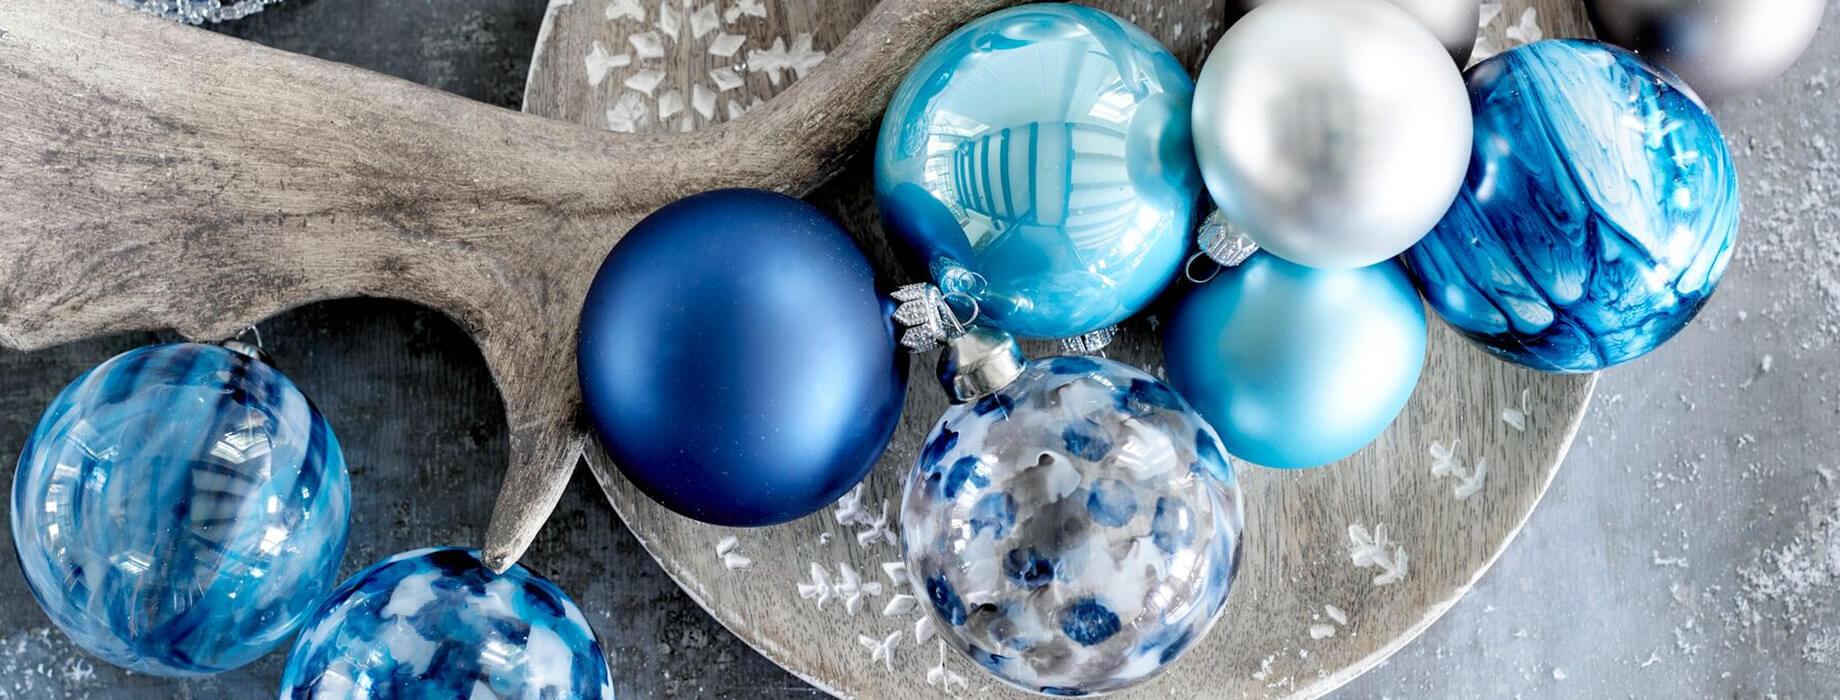 Blauwe Kerstballen